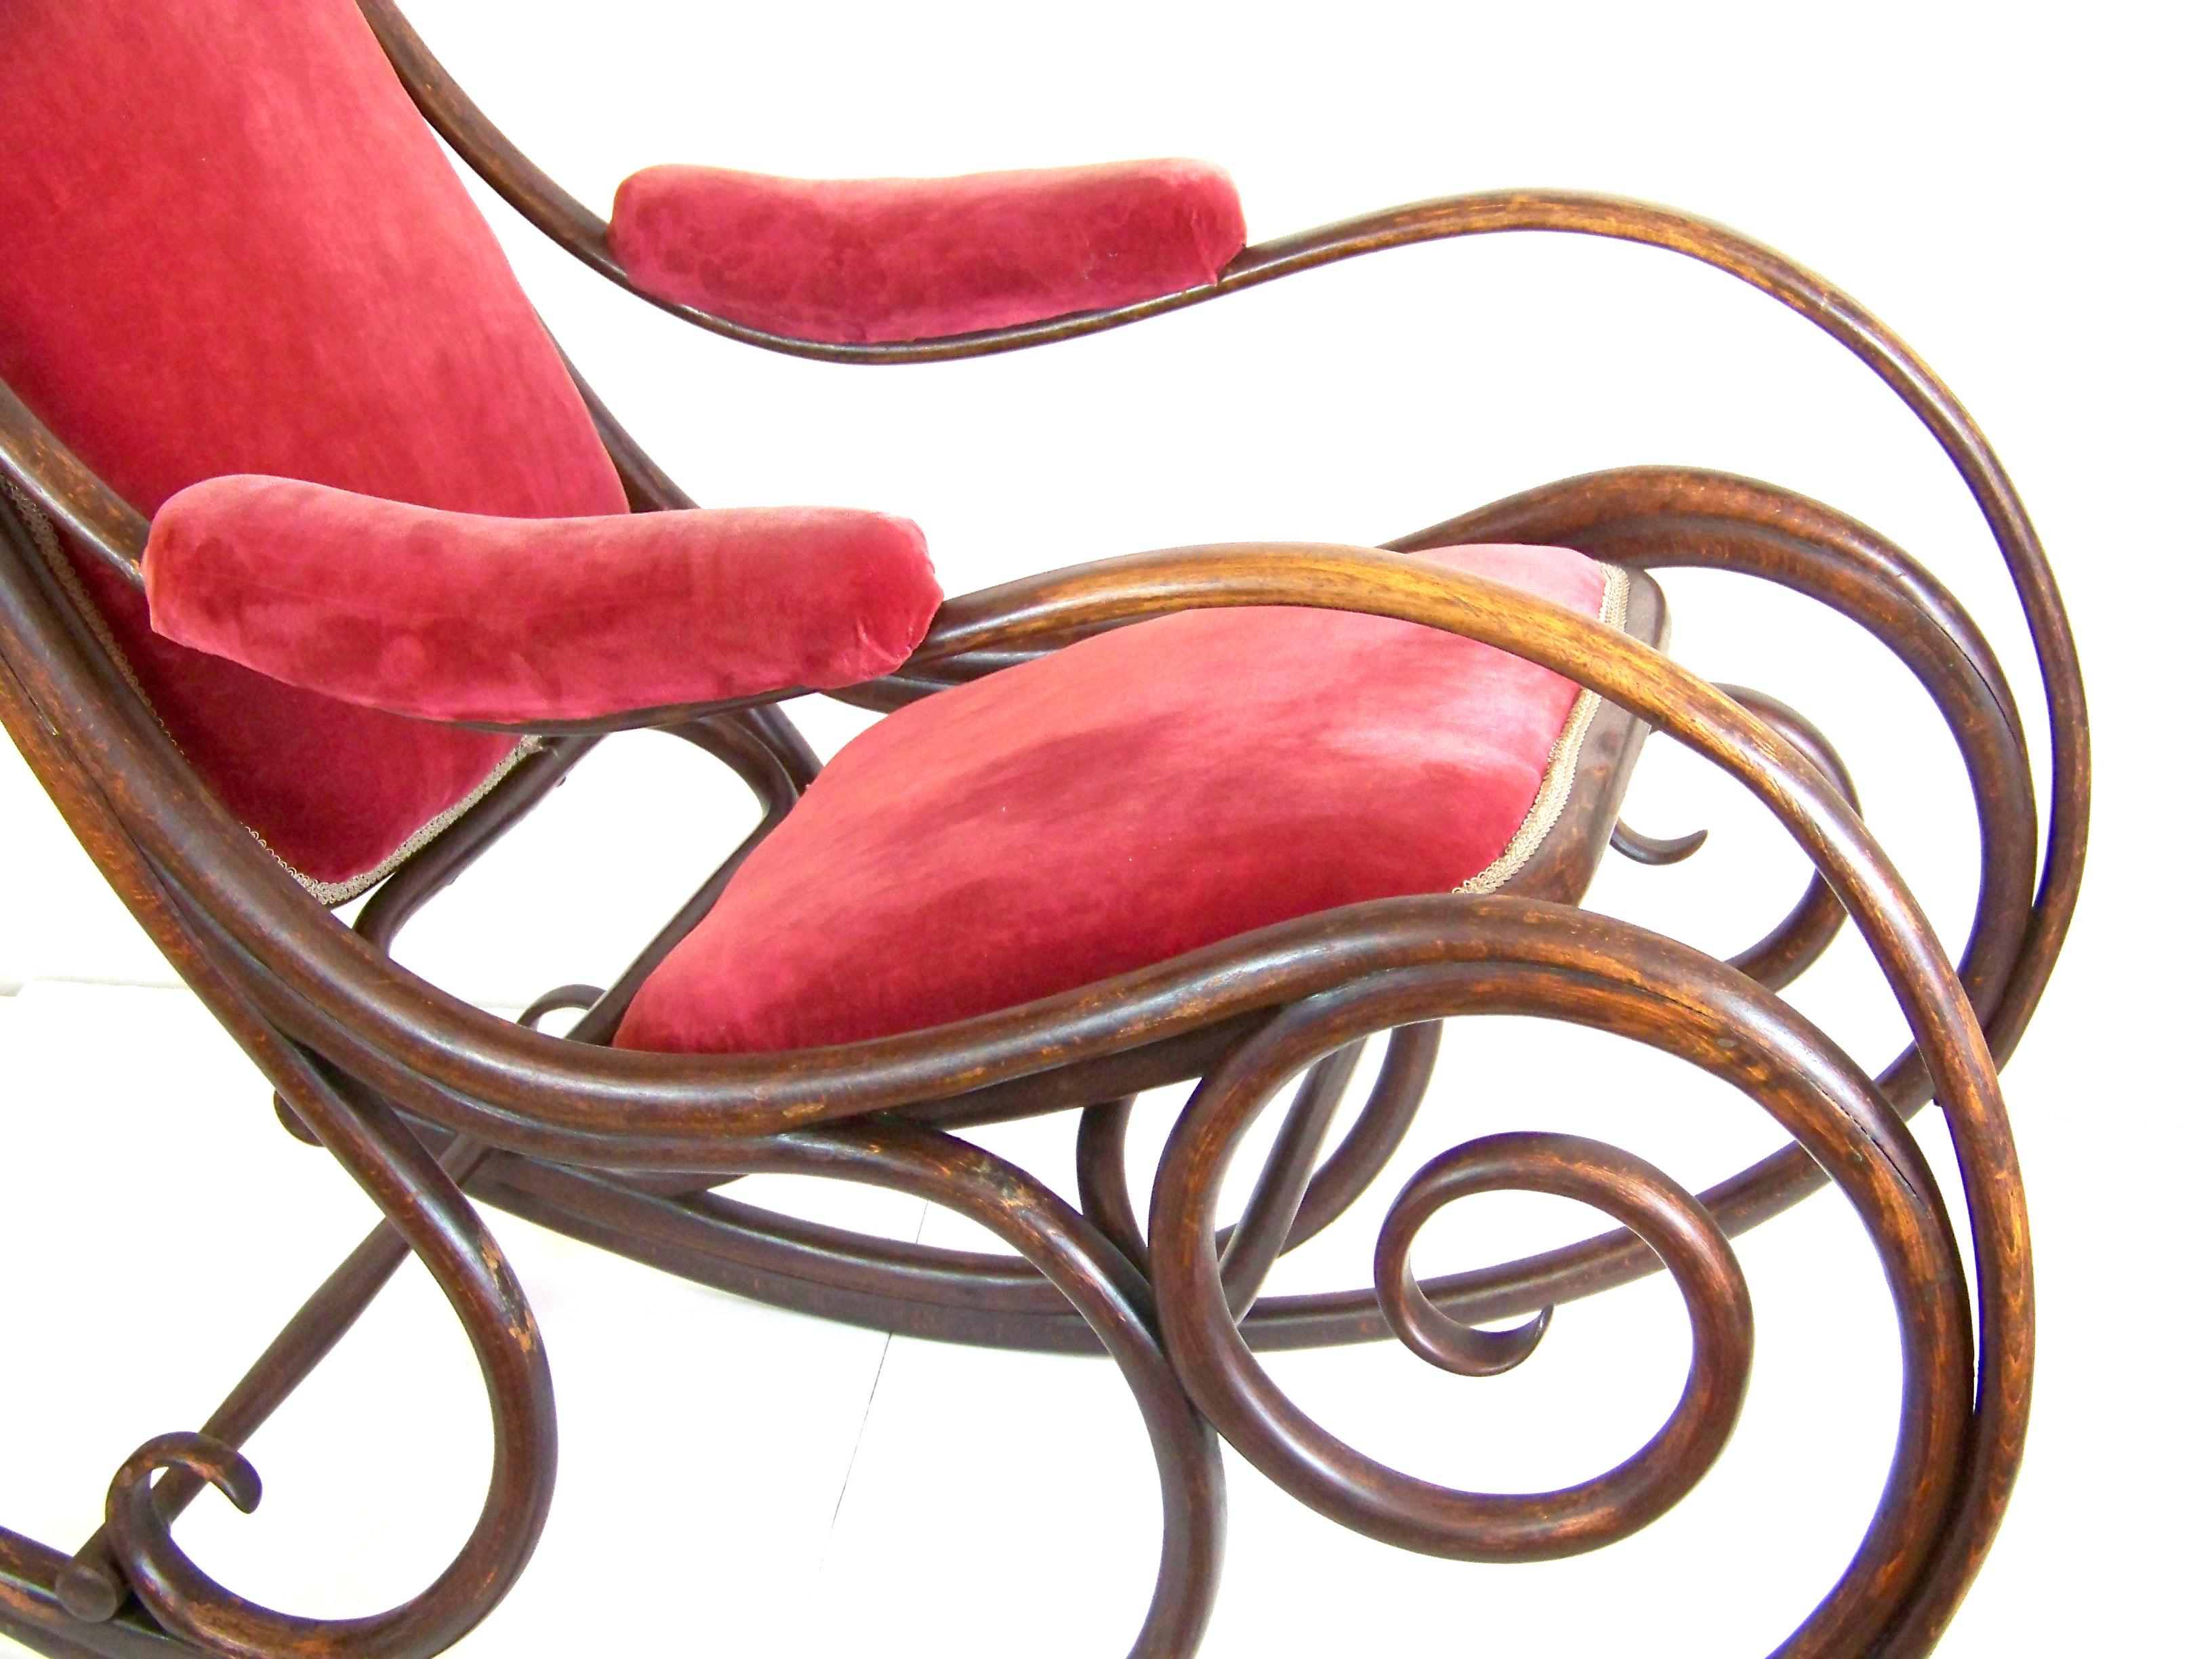 Sehr seltenes Modell, der erste Schaukelstuhl, der von Michael Thonet erfunden wurde. Je nach Form und verwendetem Stempel handelt es sich um ein sehr seltenes archaisches Modell. Der Sessel wurde für die Polsterung hergestellt. Es war in dieser